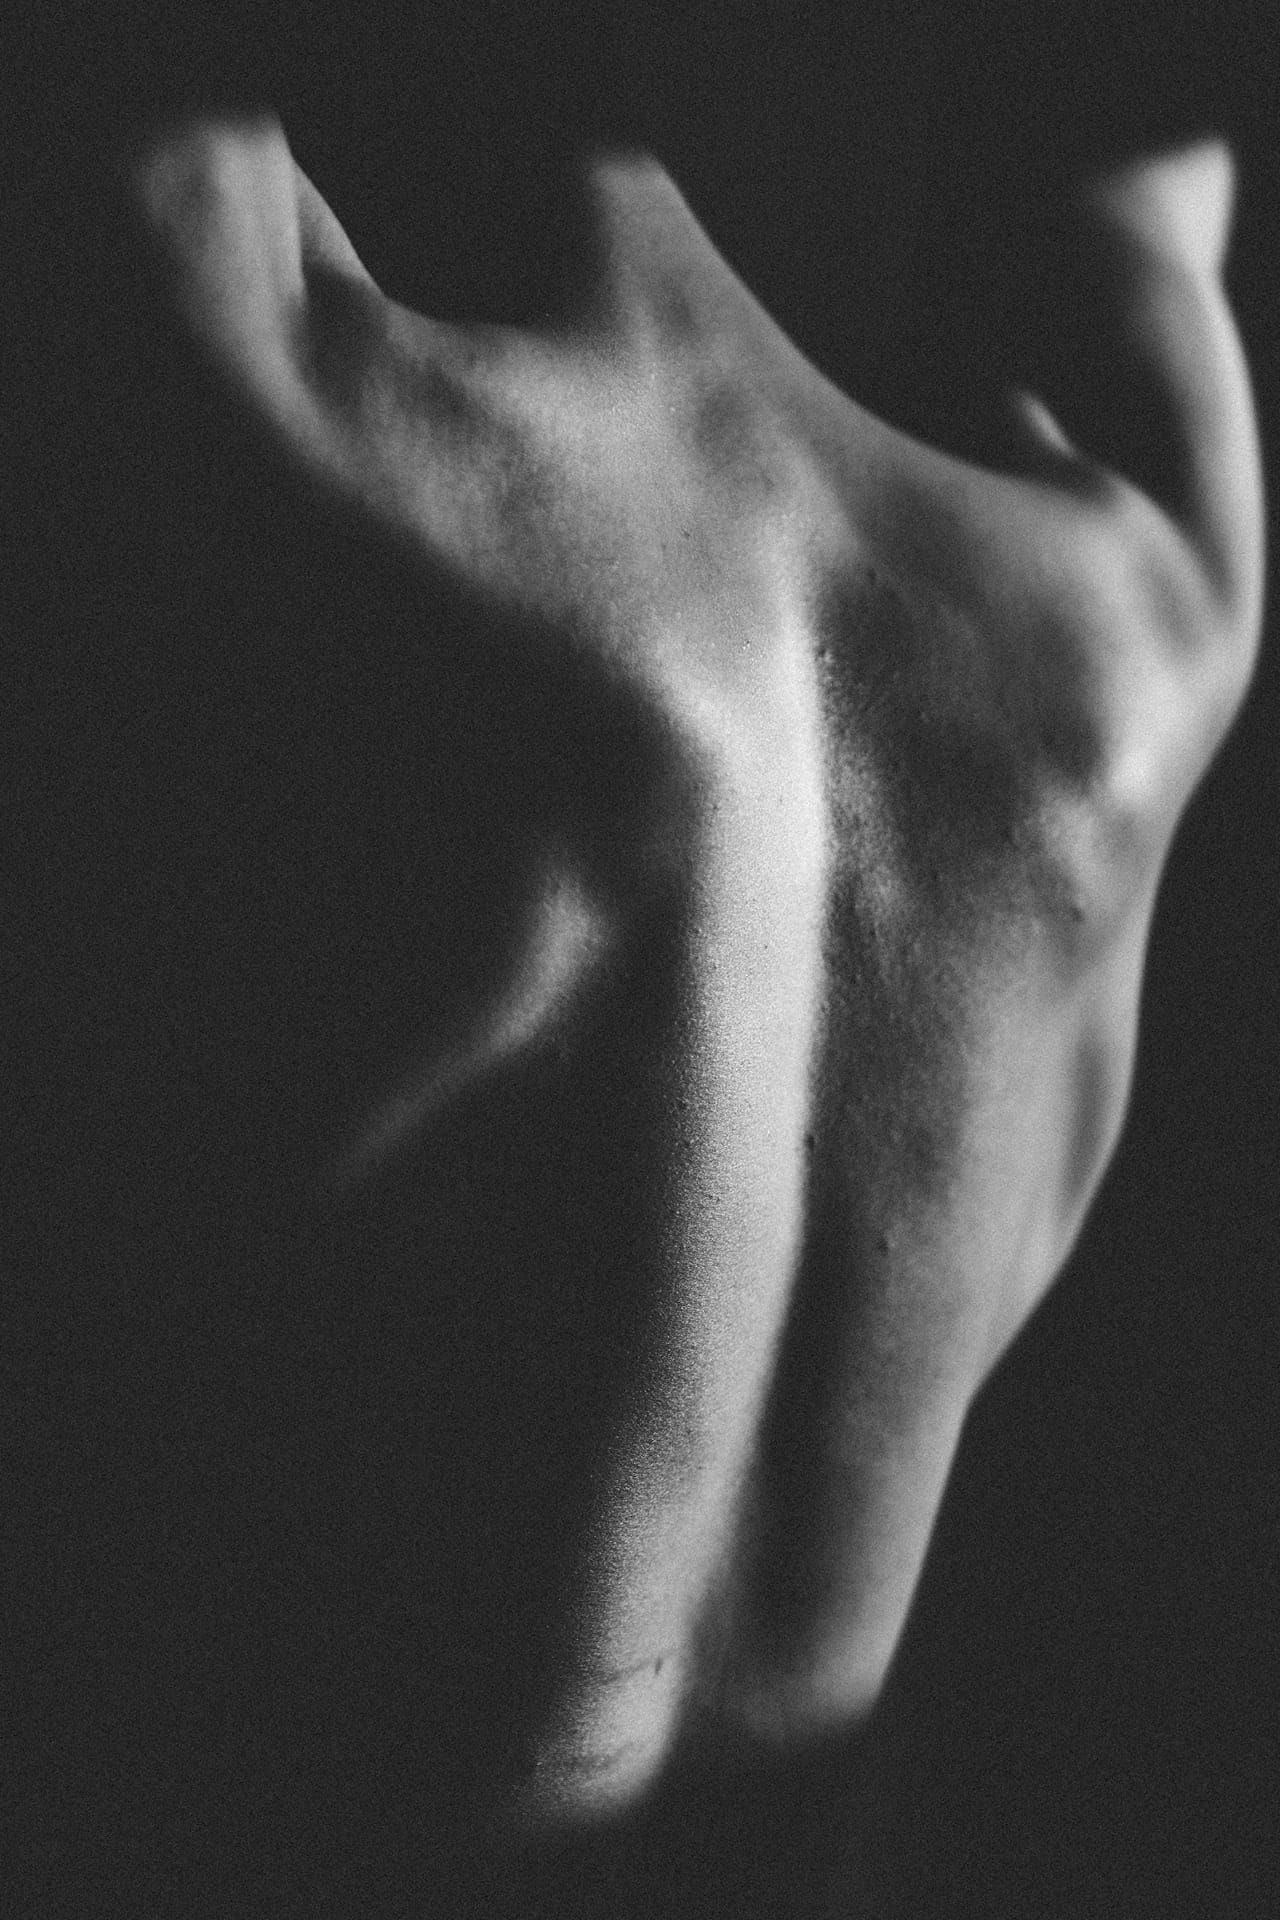 Schultermuskeln in schwarz-weiß